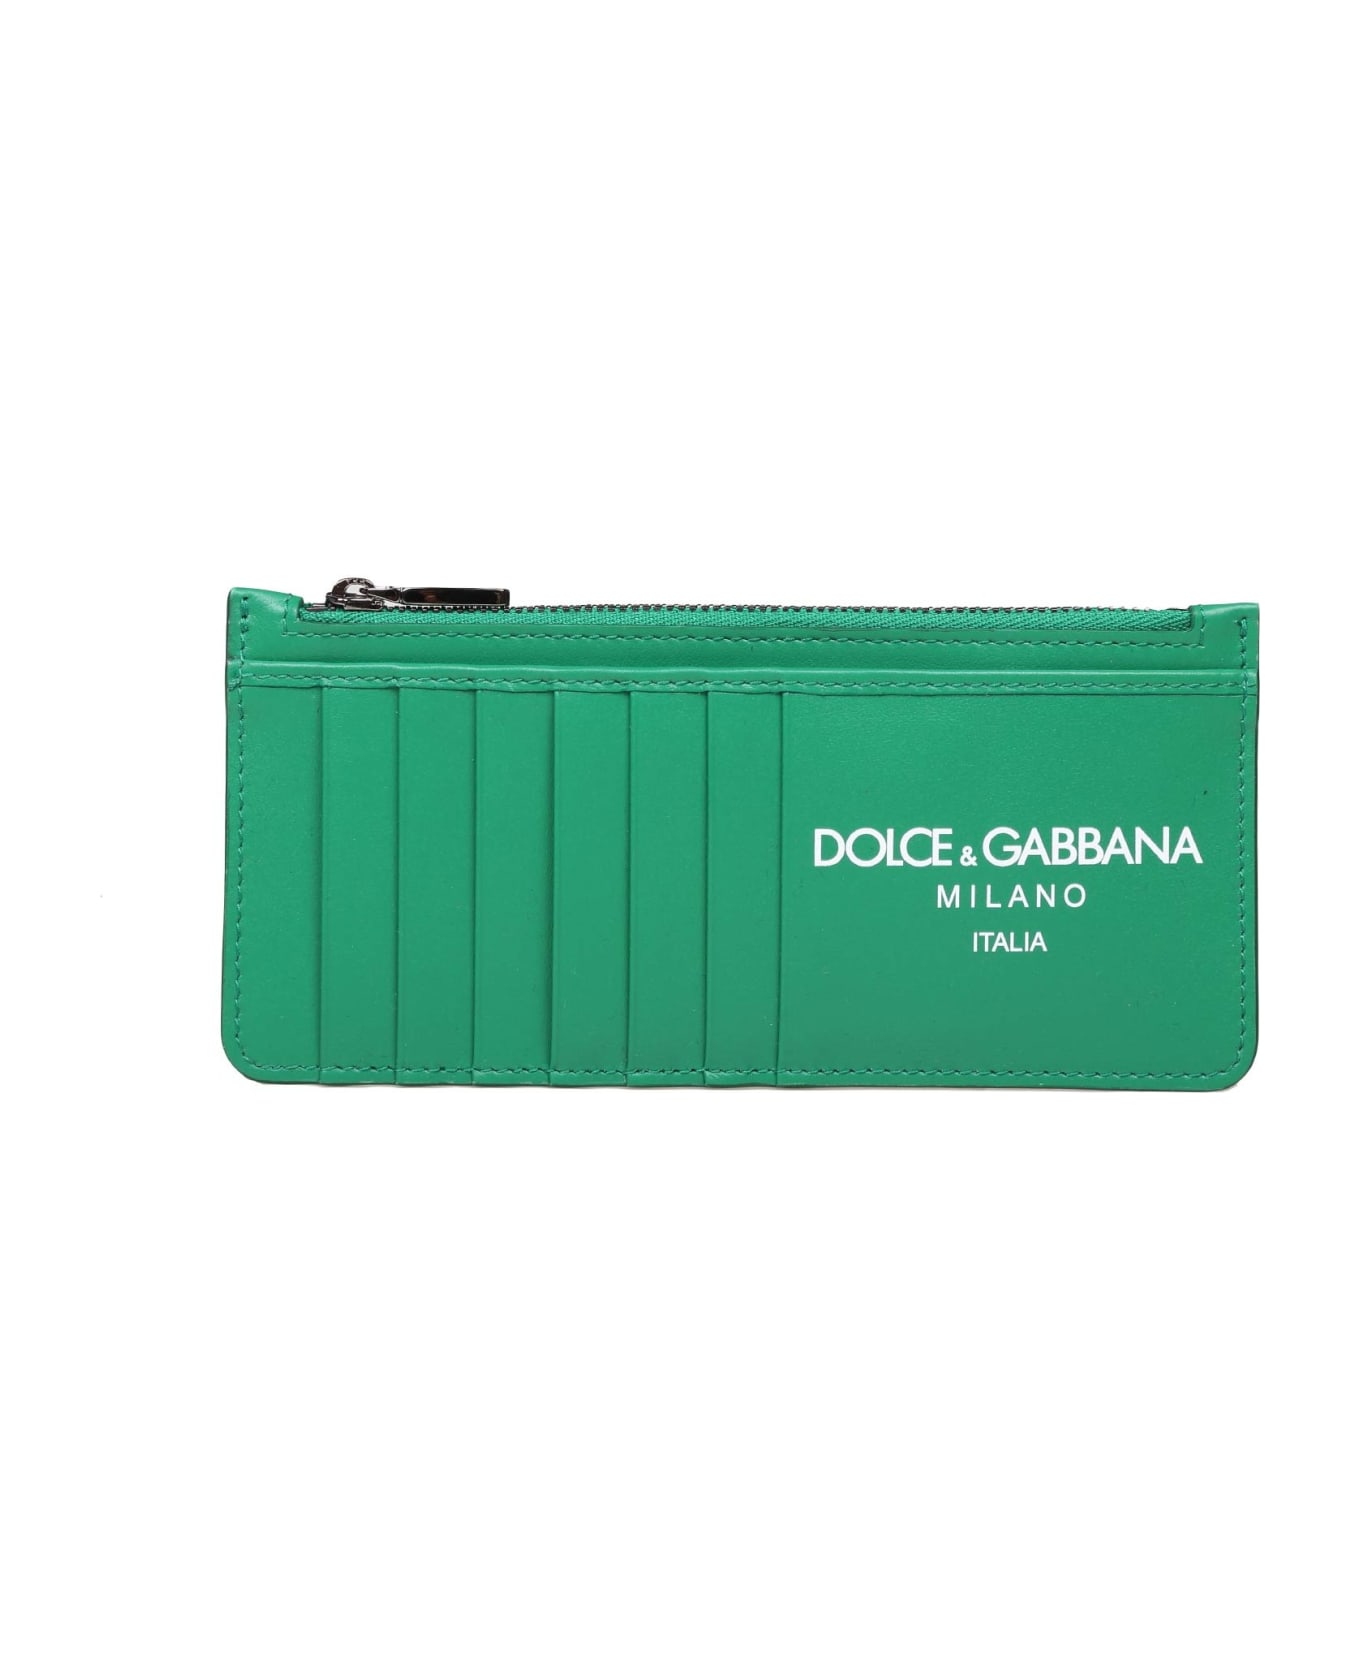 Dolce & Gabbana Calfskin Card Holder With Green Logo - EMERALD 財布